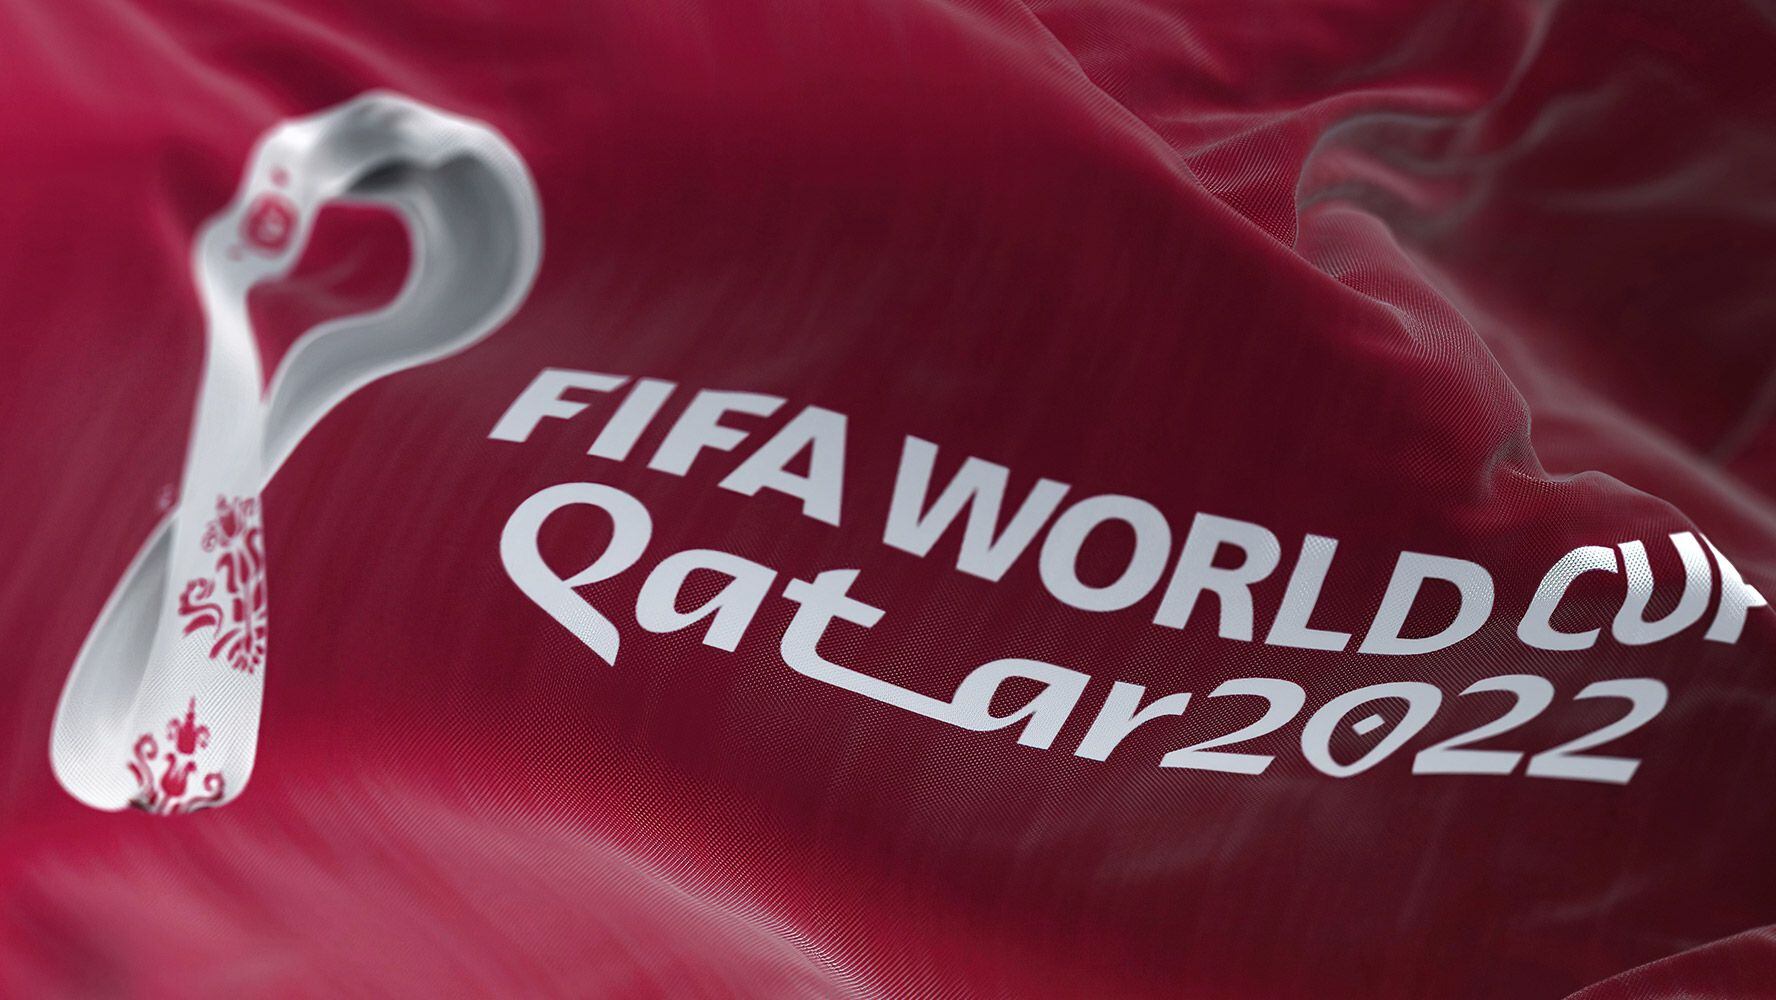 Qatar 2022: Organizadores del Mundial permitirían banderas LGBT+ y protestas pacíficas